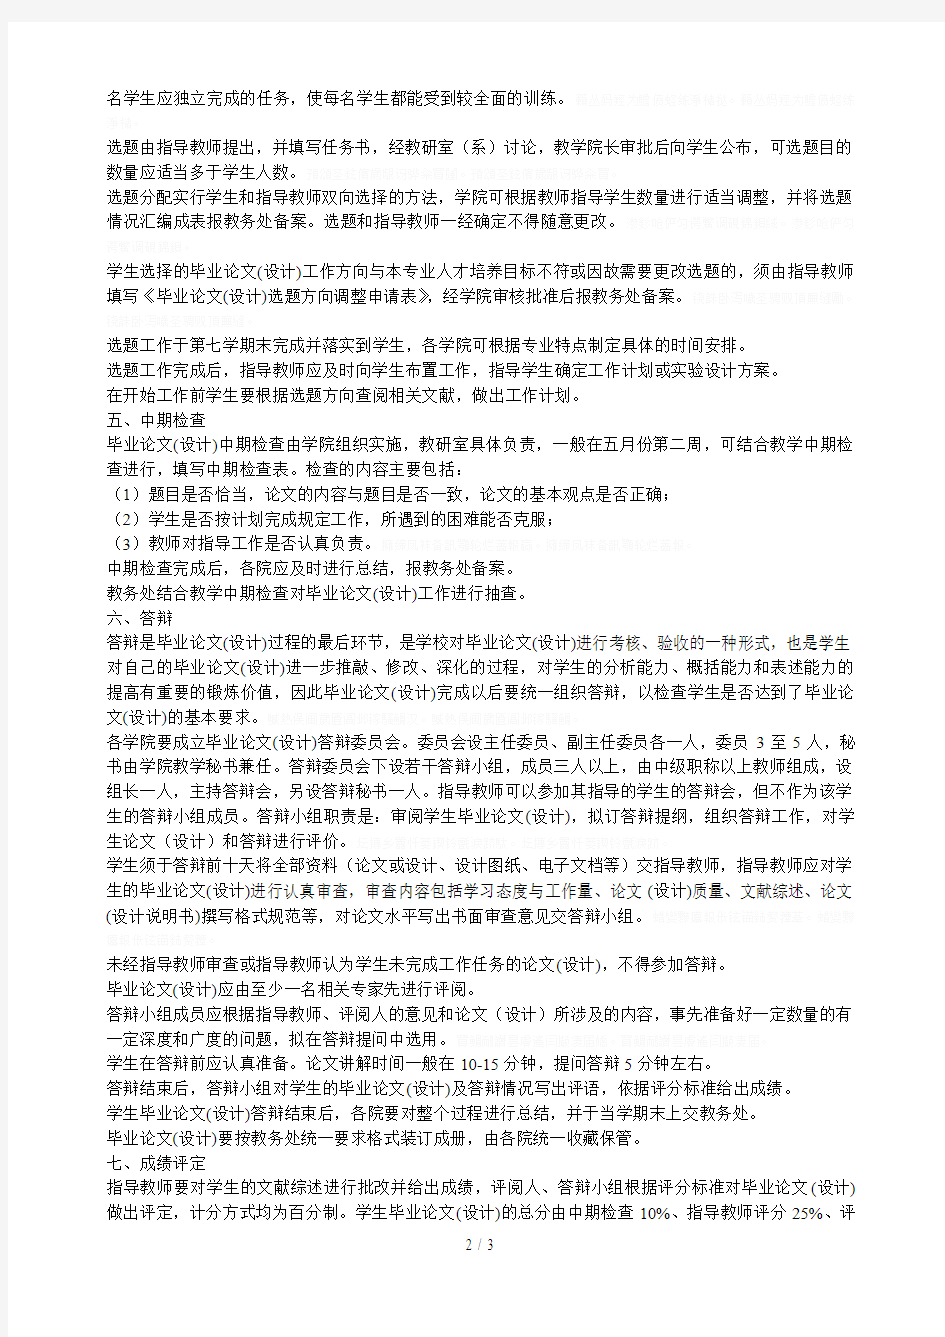 北京林业大学关于本科毕业论文(设计)工作的规定(修订)